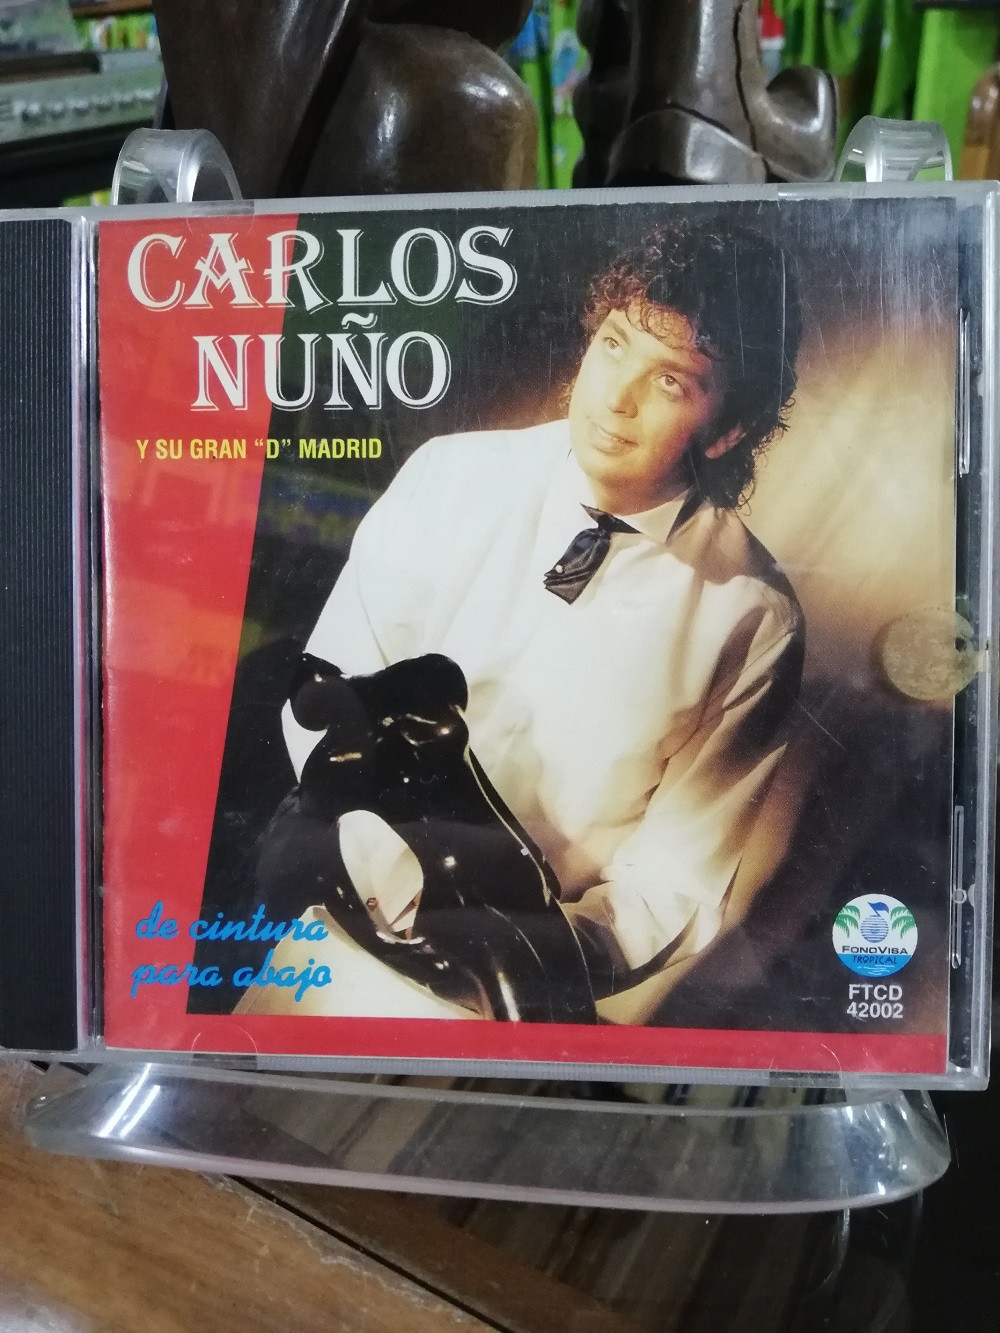 Imagen CD CARLOS NUÑO Y SU GRAN "D" MADRID - DE CINTURA PARA ABAJO